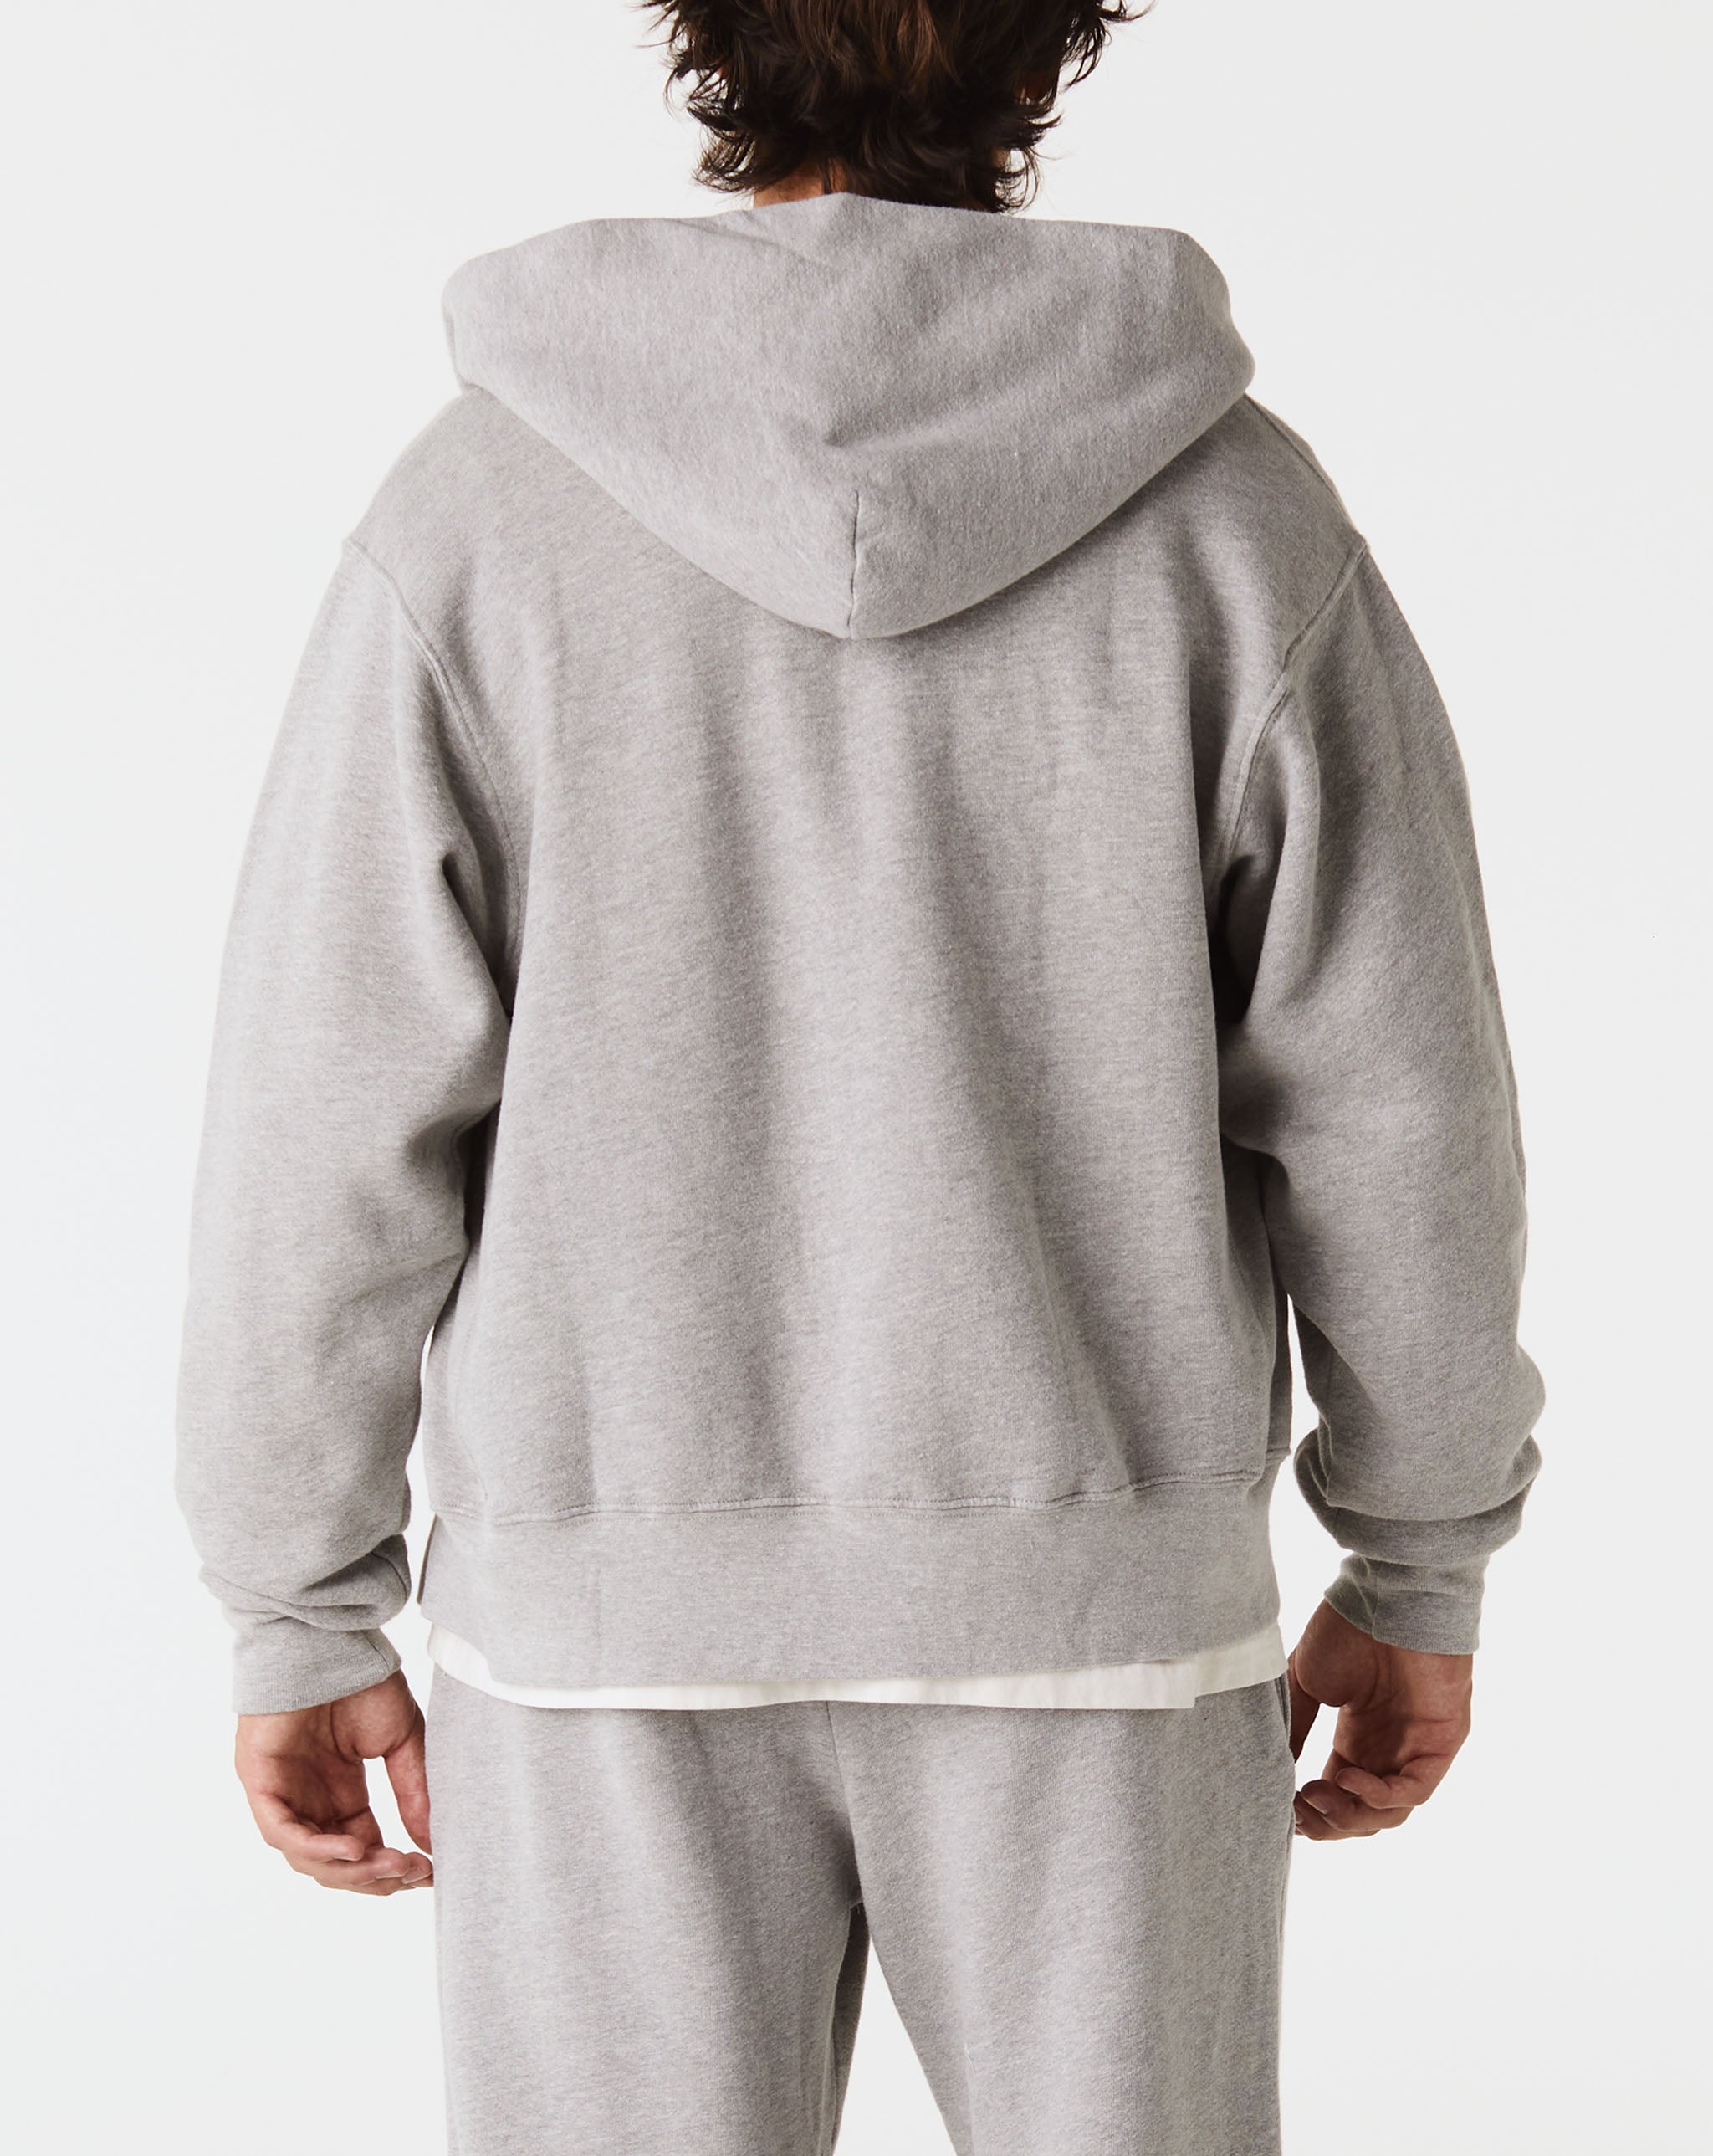 Les Tien vivienne westwood tie dye print hoodie item  - Cheap 127-0 Jordan outlet